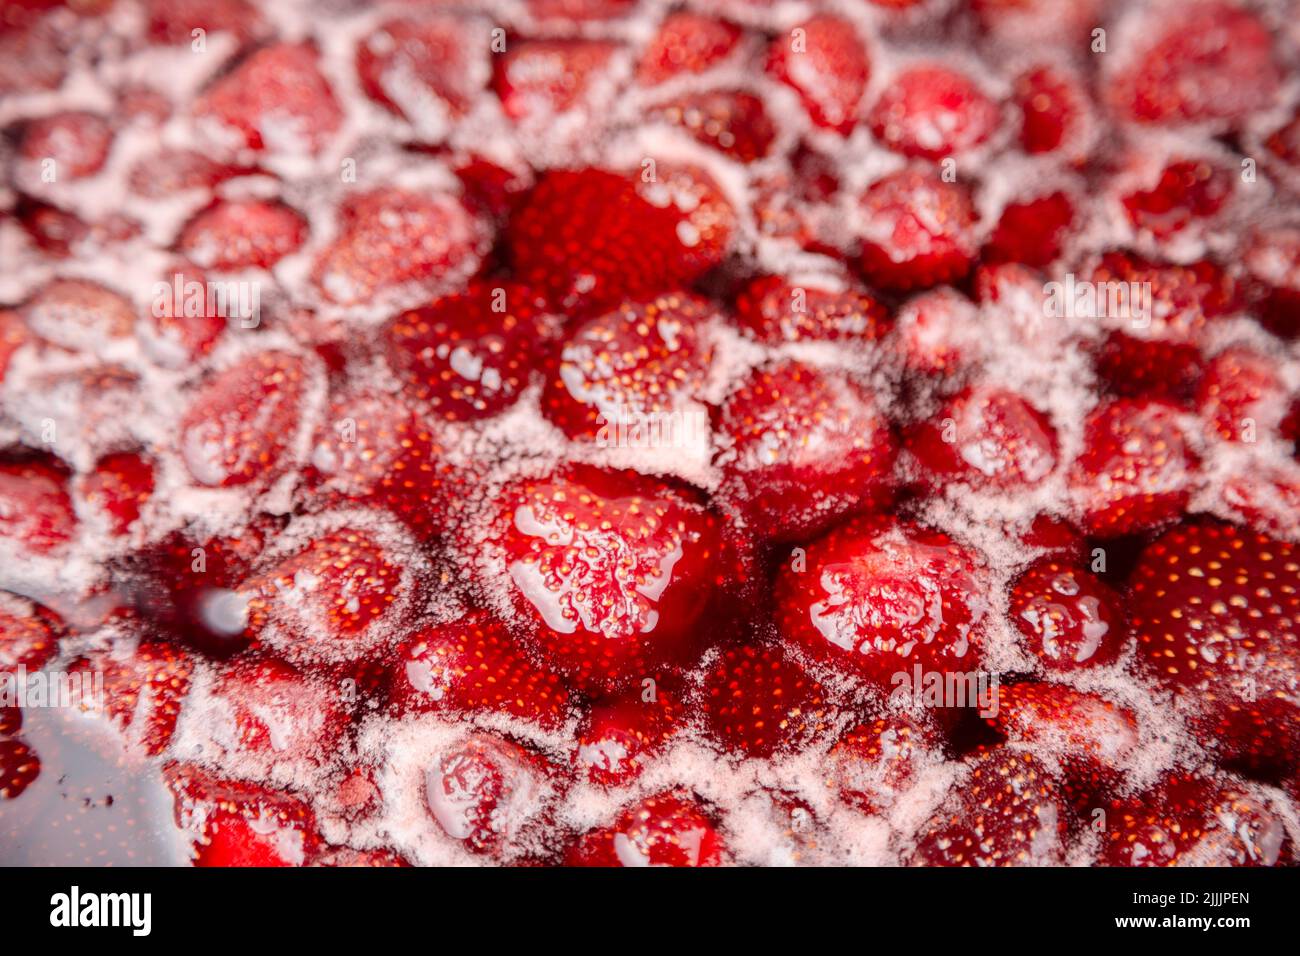 PRIMER PLANO: Mermelada de fresa. Haga una mermelada de fresa. Hierva las fresas en la sartén. Proceso de cocción, hervir bayas para enlatar. Alimentos dulces saludables. Cocinar mermelada de fresa de cerca. Foto de stock